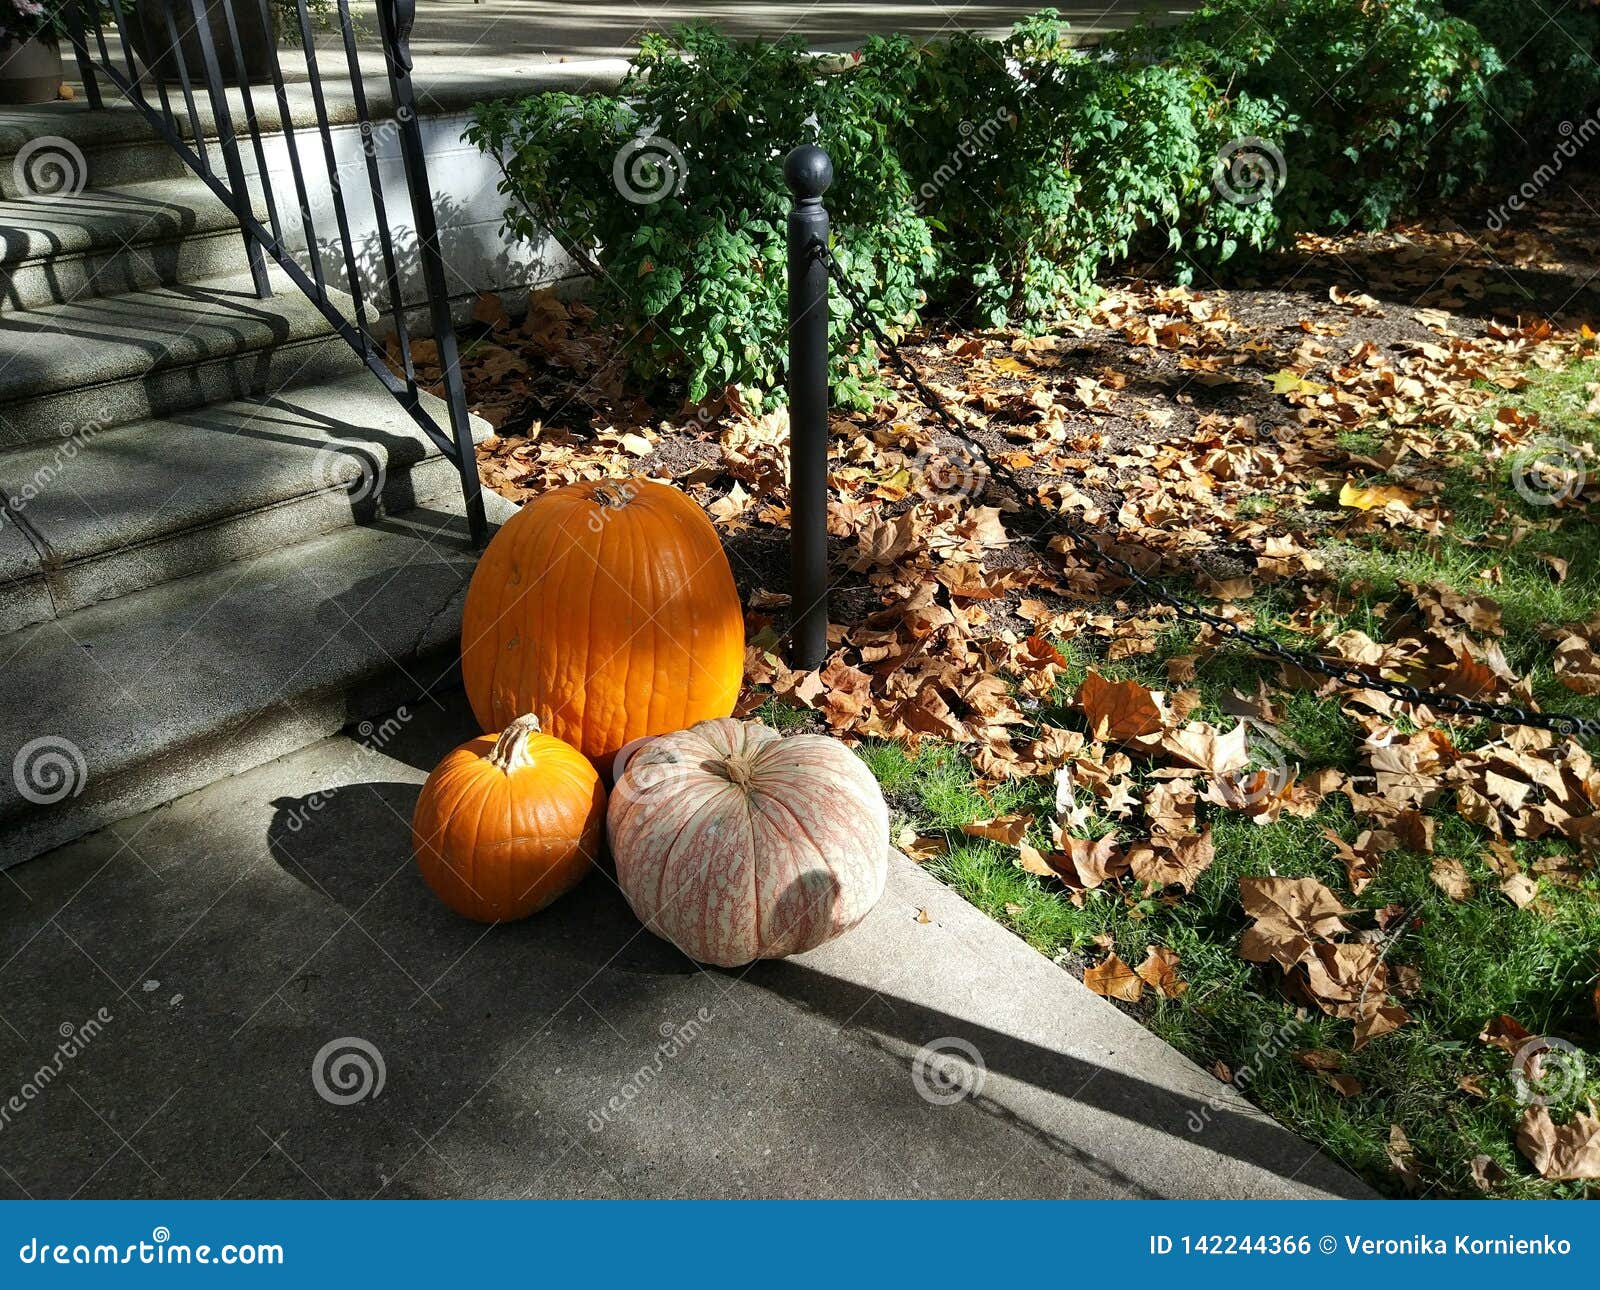 Halloween Pumpkins Near House, Autumn Spirit. Stock Photo - Image of food, season: 142244366